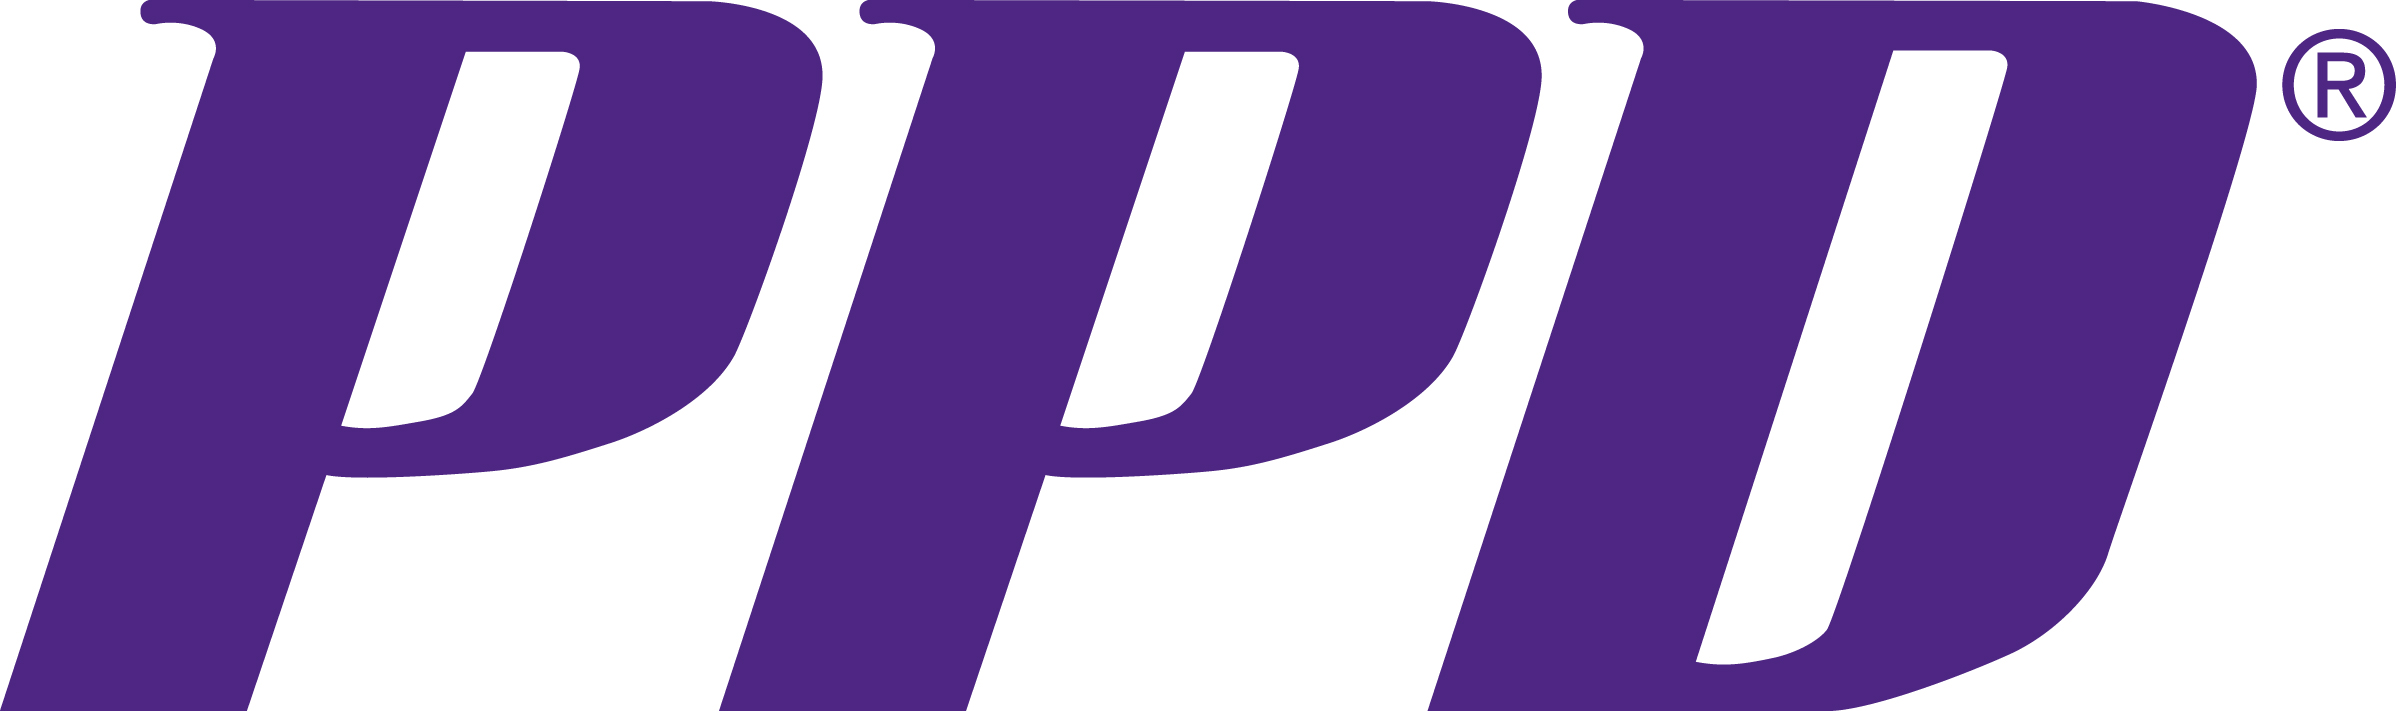 PPD-Logo-PMS-268